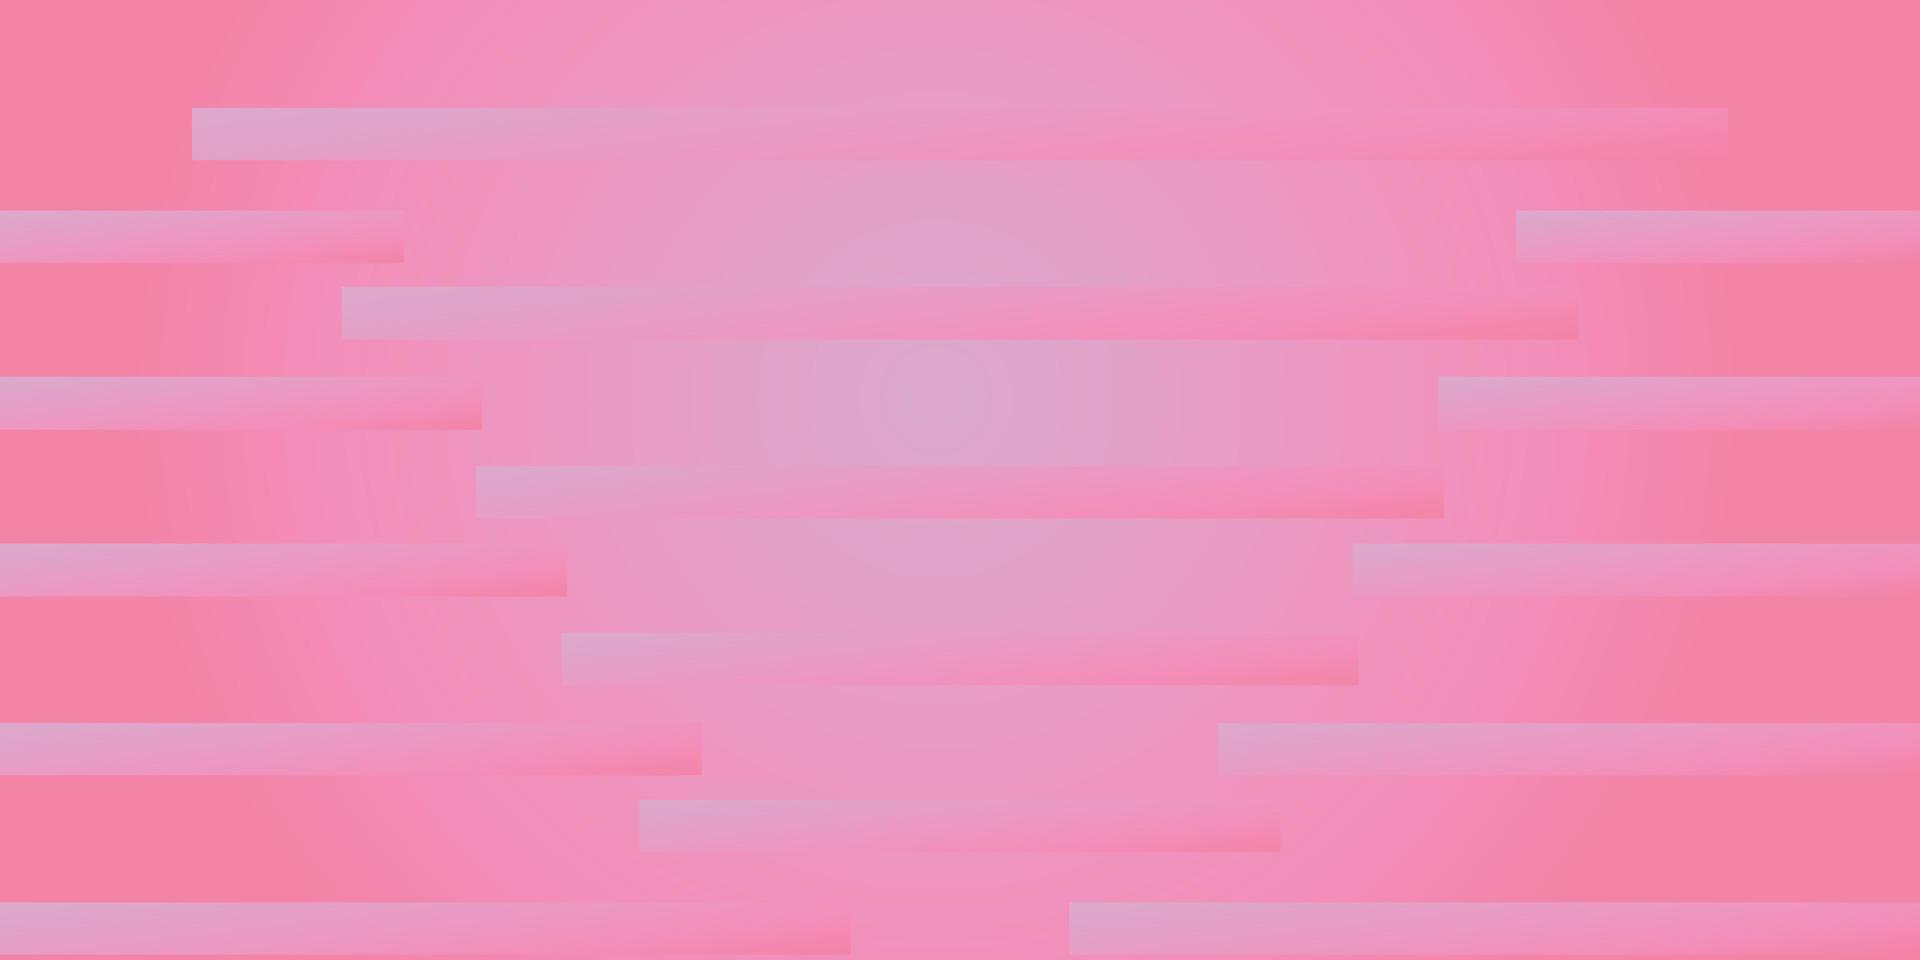 suddig rosa med linje textur vektor bakgrund. gradient illustration i enkel stil för affärshäfte, flygblad, presentation.